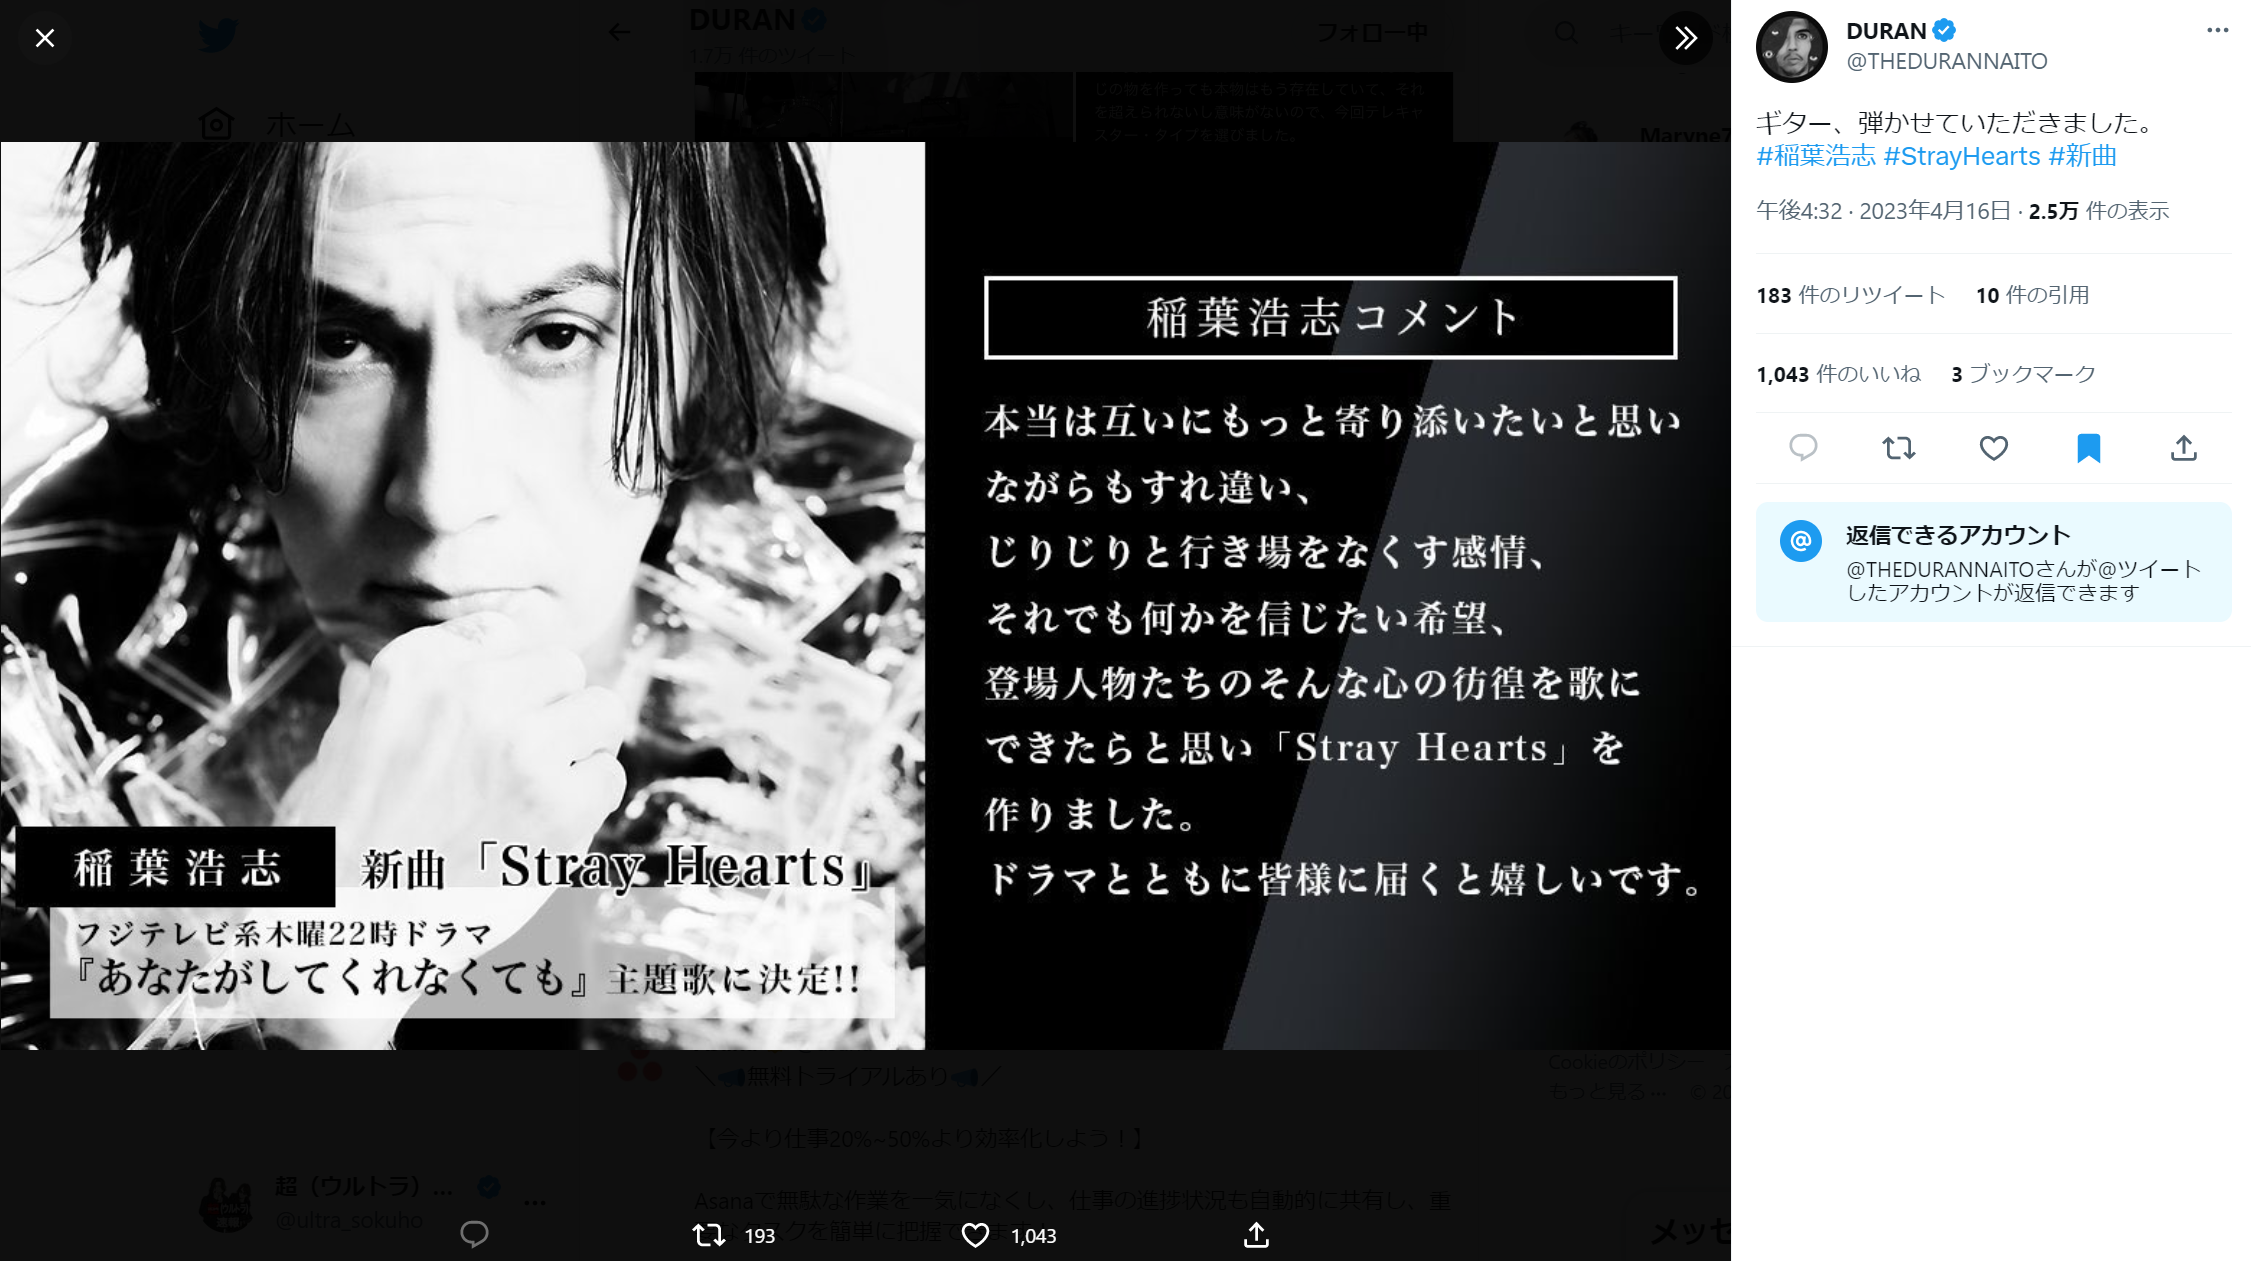 DURANが稲葉浩志「Stray Hearts」にギター参加したことを報告したTwitter投稿